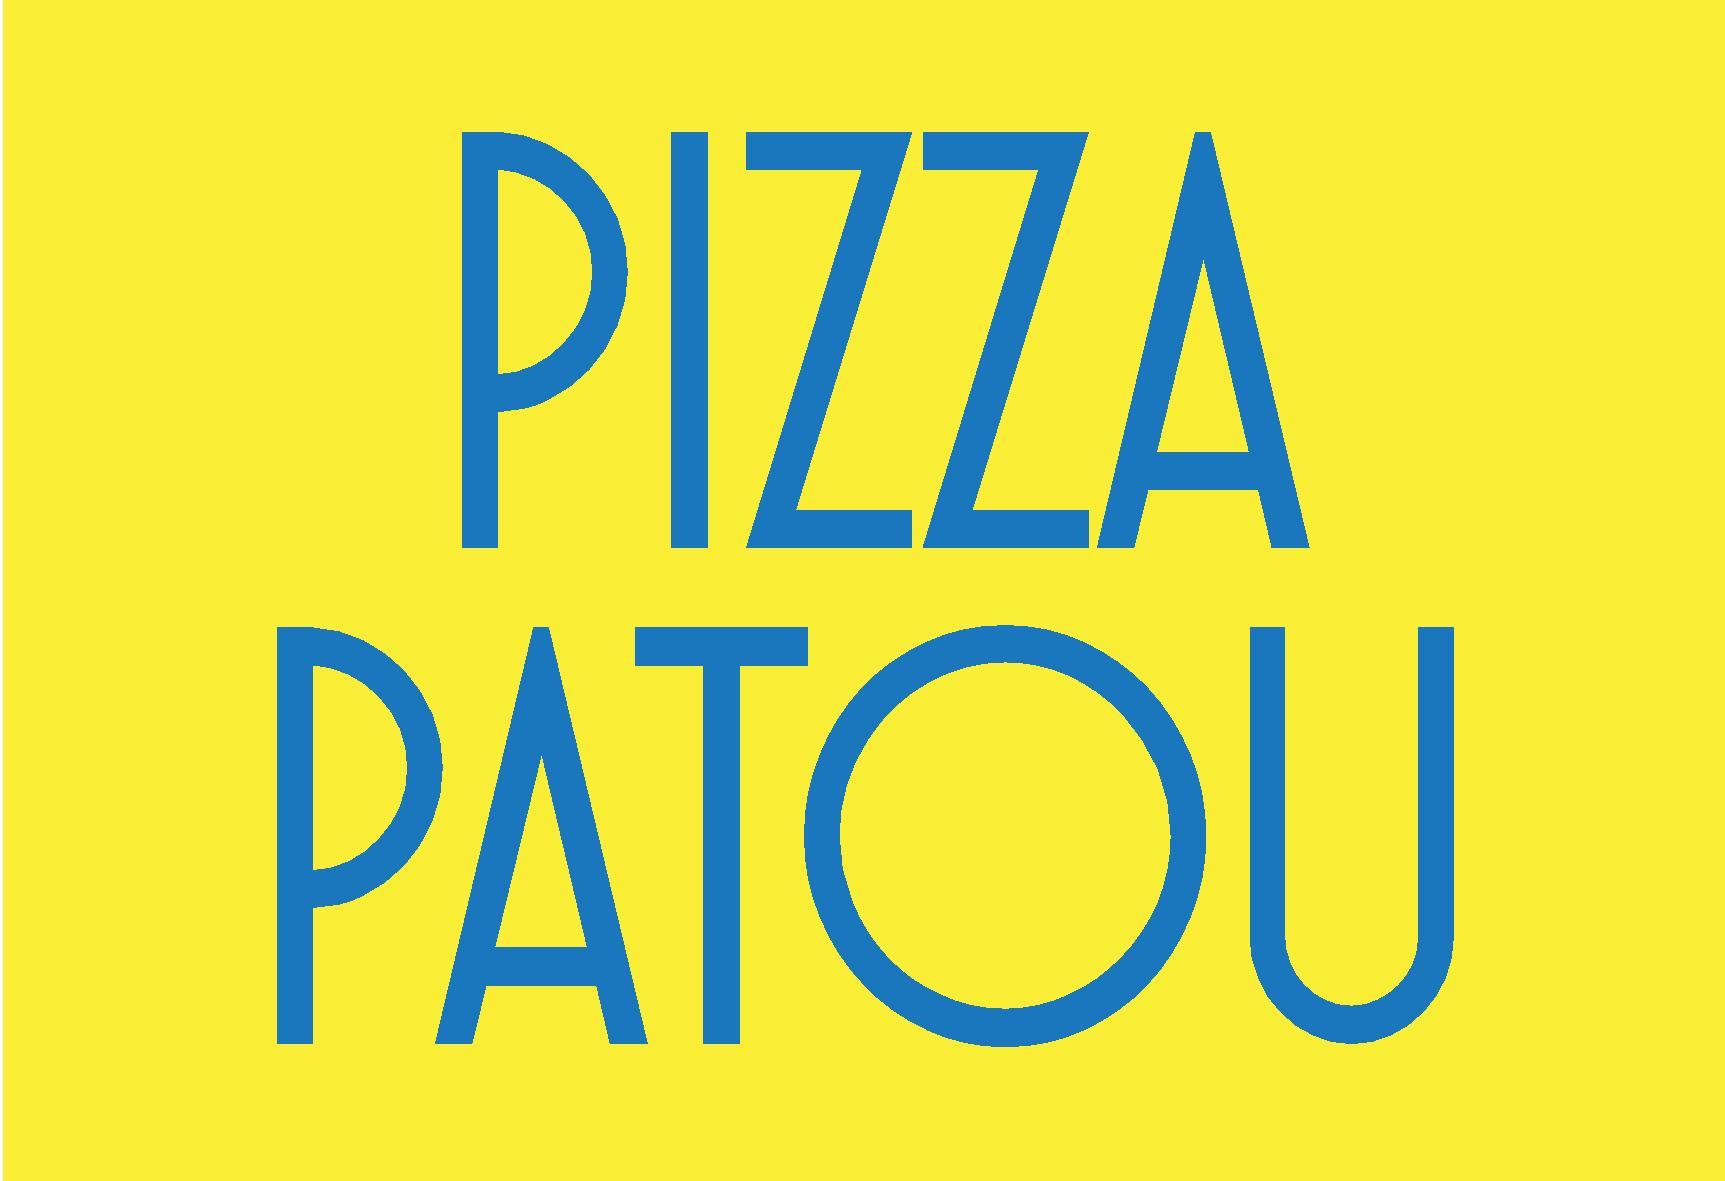 logo-pizza-patou-page-001